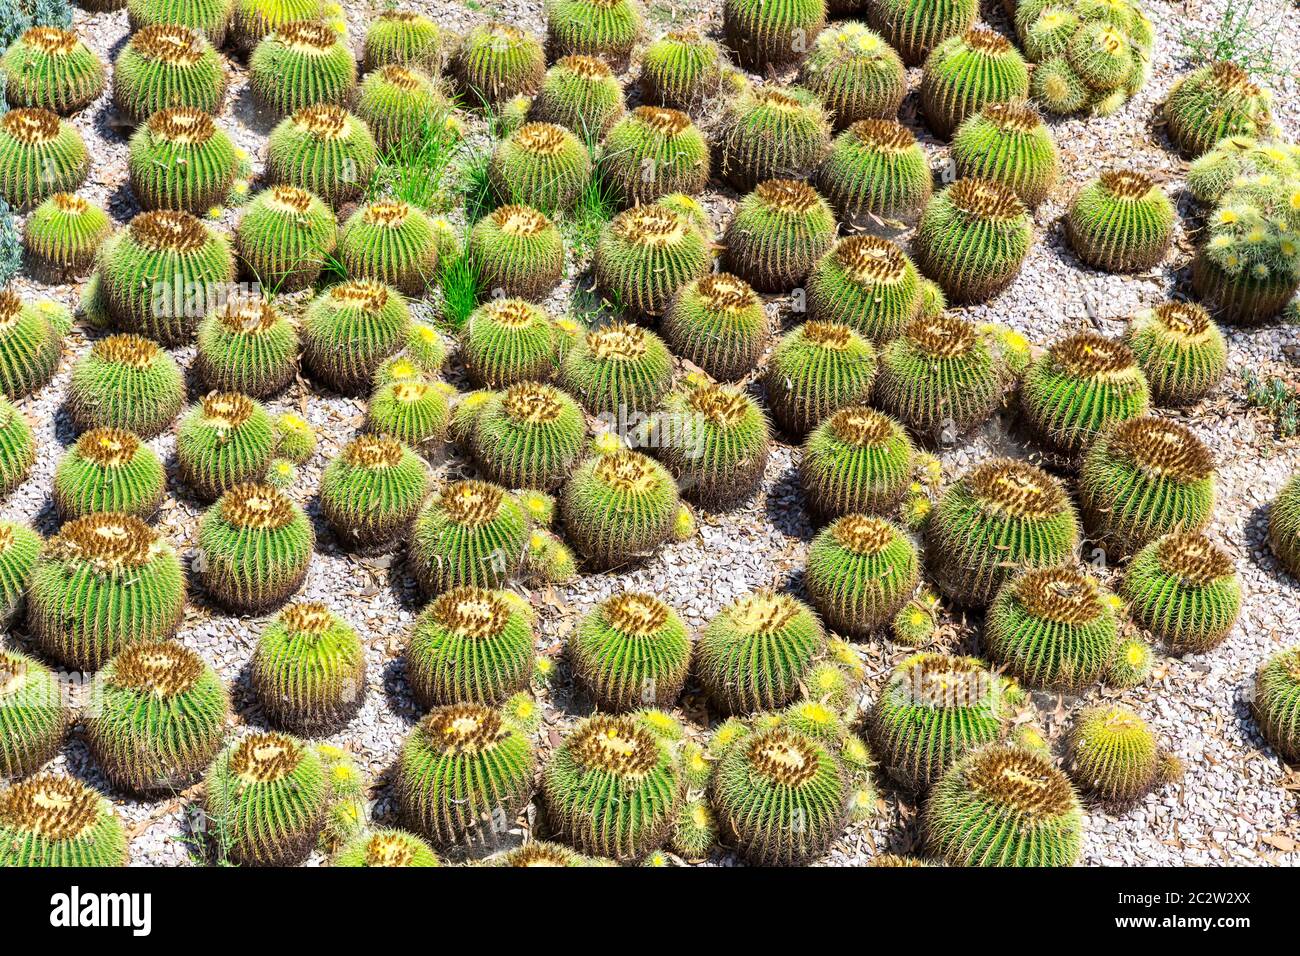 Molti piccoli cactus verdi. Piante desertiche sbaccate. Foto Stock